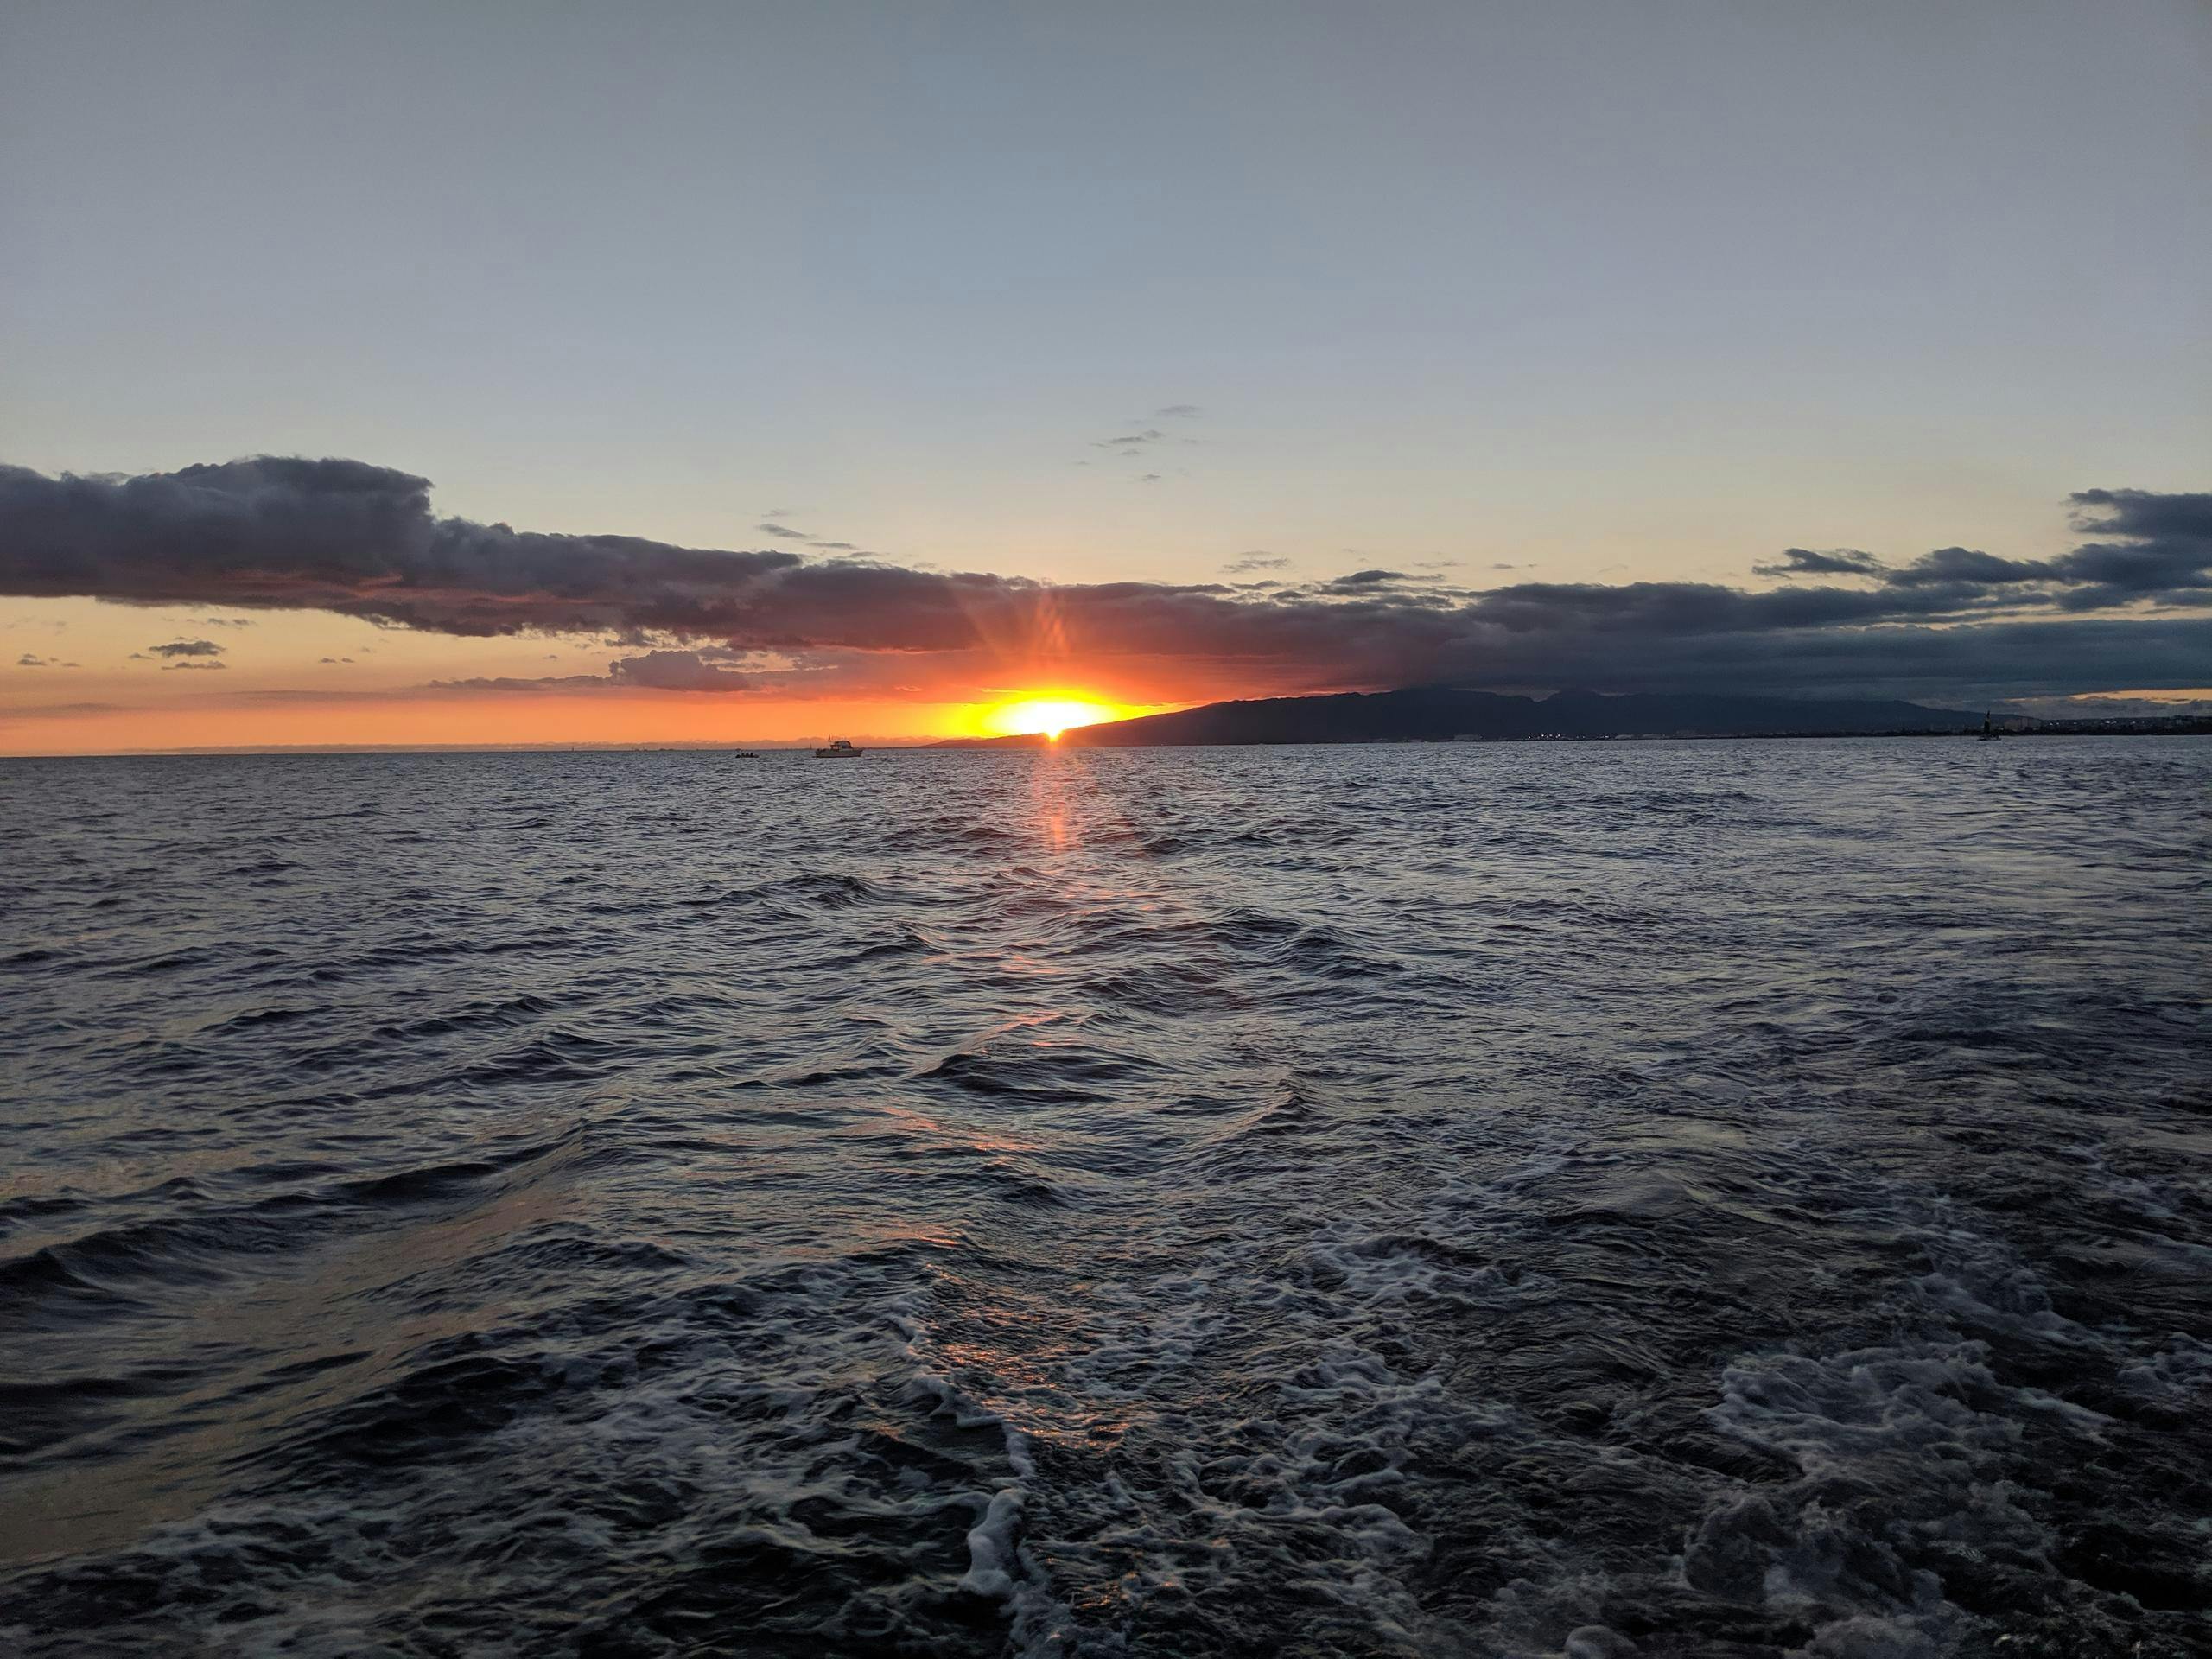 Rejs o zachodzie słońca na południowym wybrzeżu Oahu